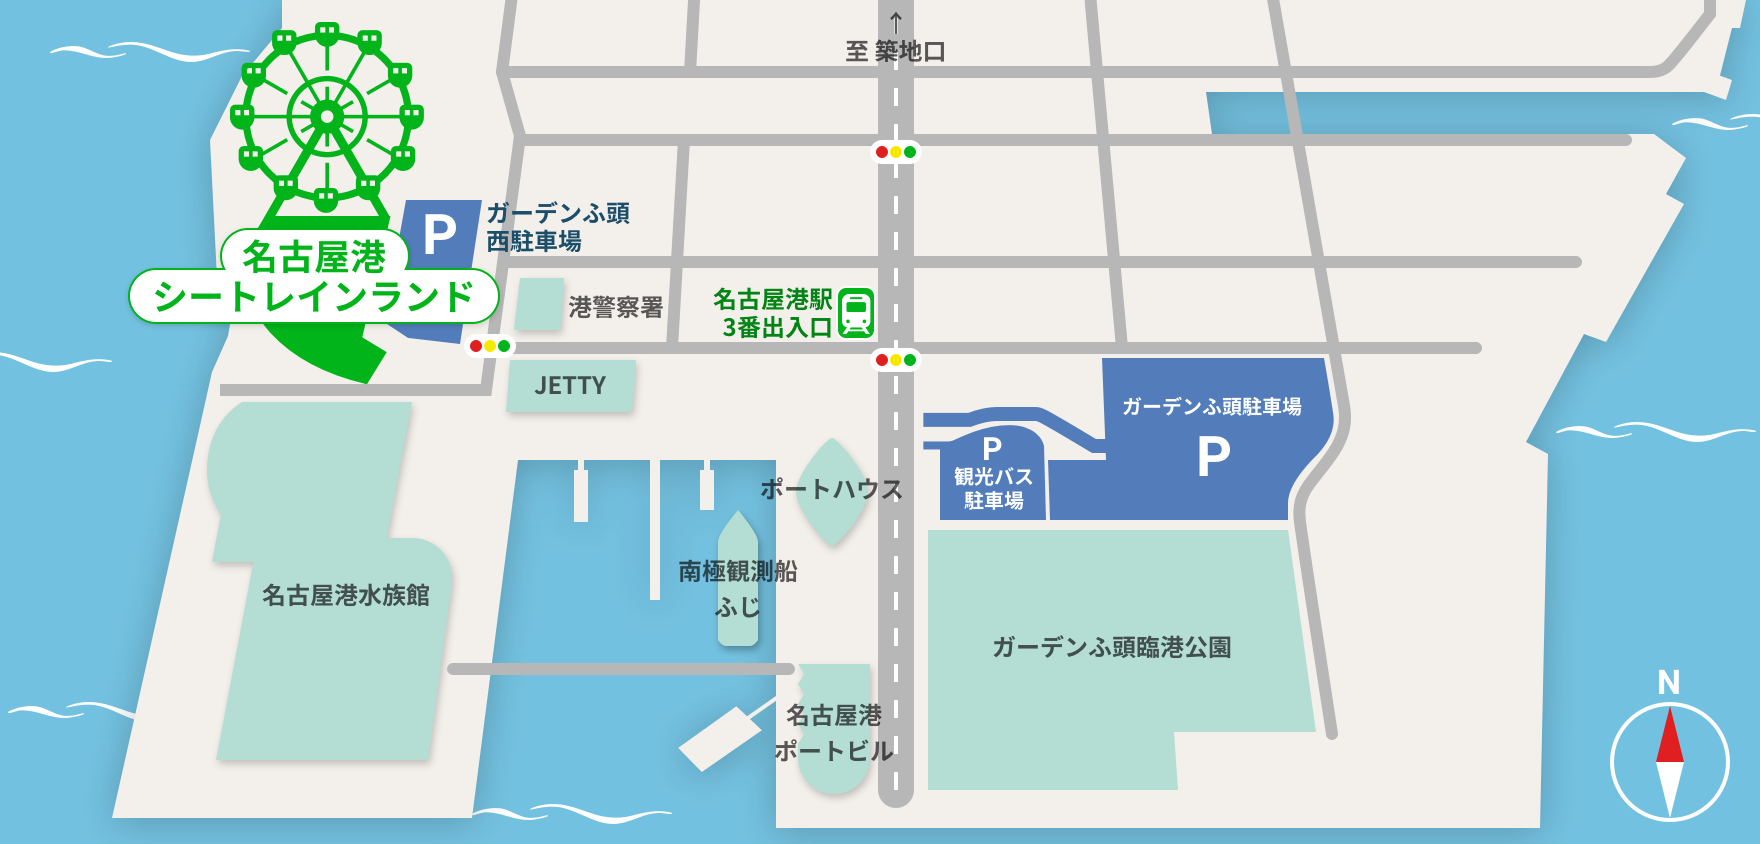 名古屋港シートレインランド アクセスマップ